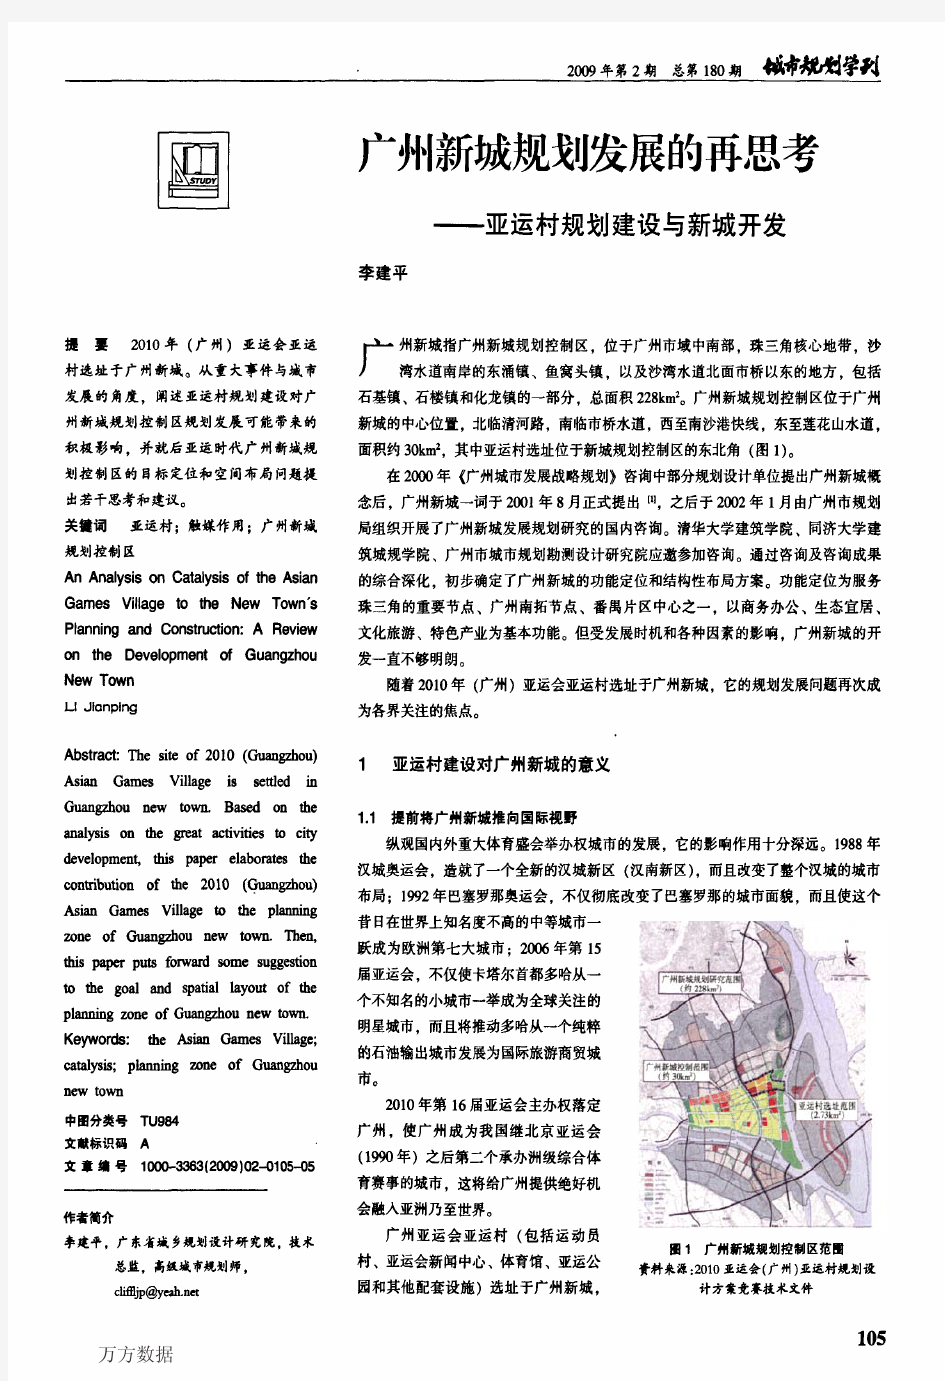 广州新城规划发展的再思考——亚运村规划建设与新城开发